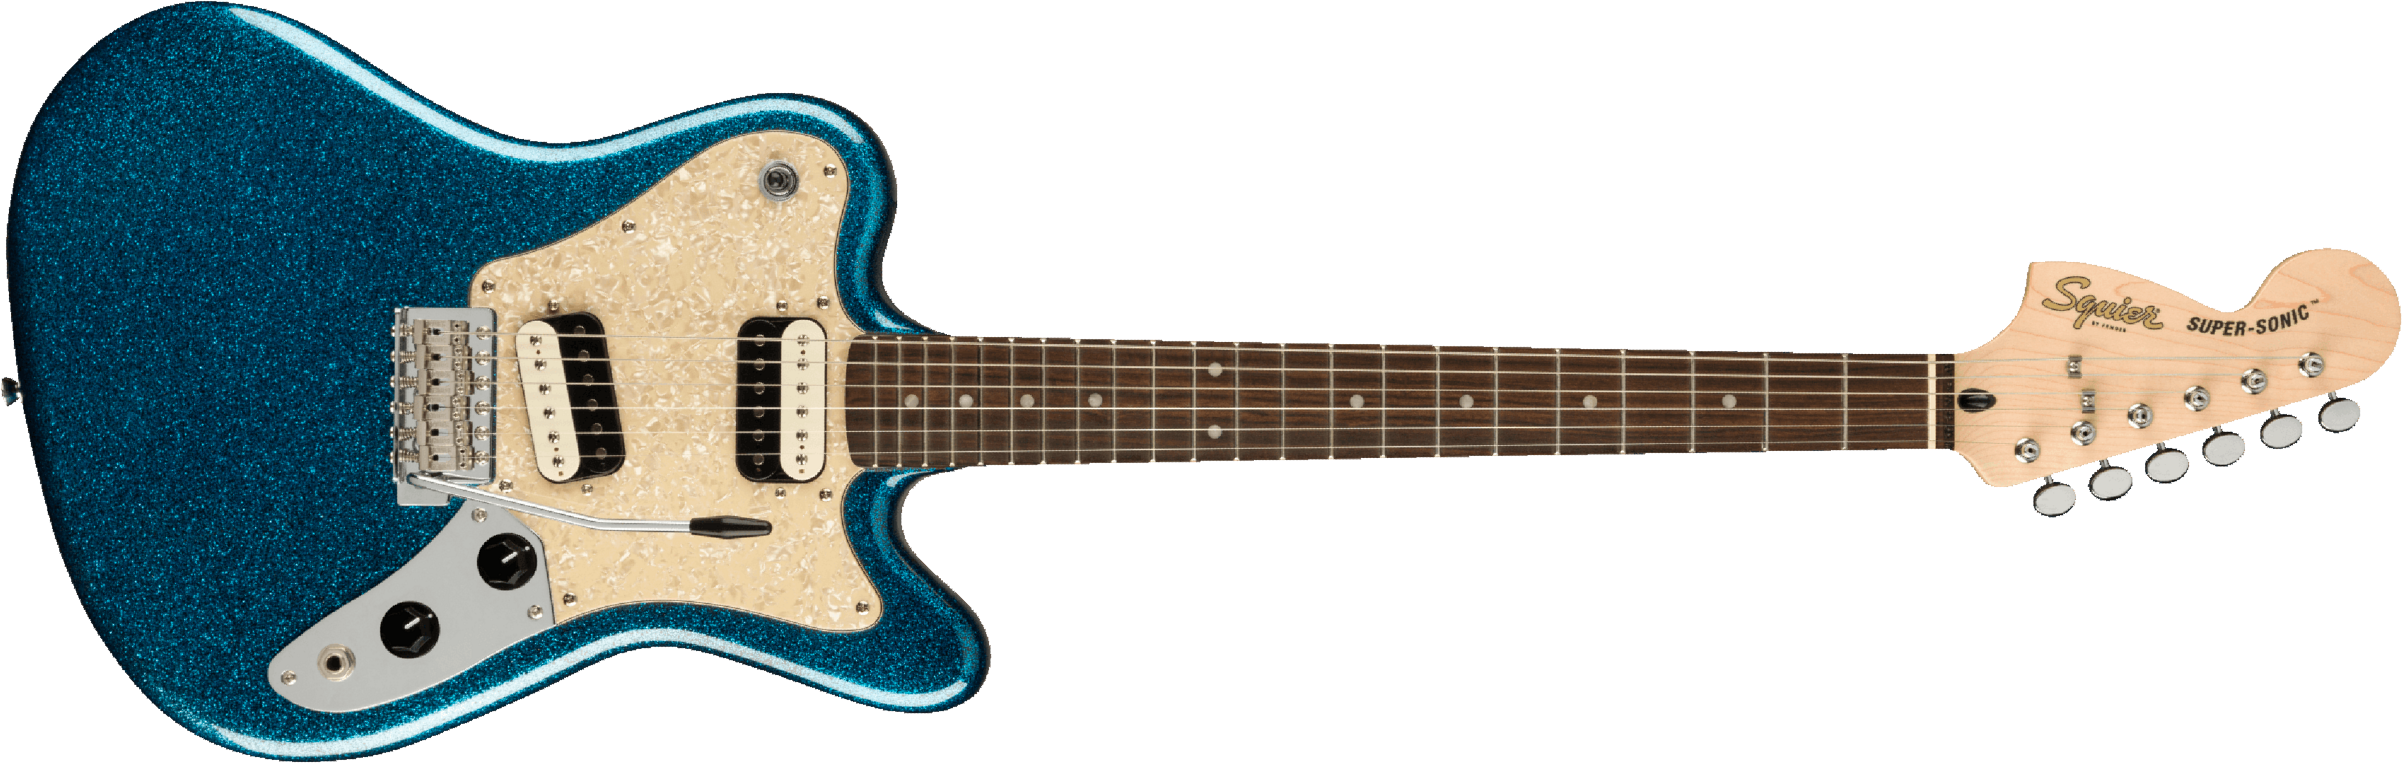 Squier Super-sonic Paranormal Hh Trem Lau - Blue Sparkle - Retro-rock elektrische gitaar - Main picture